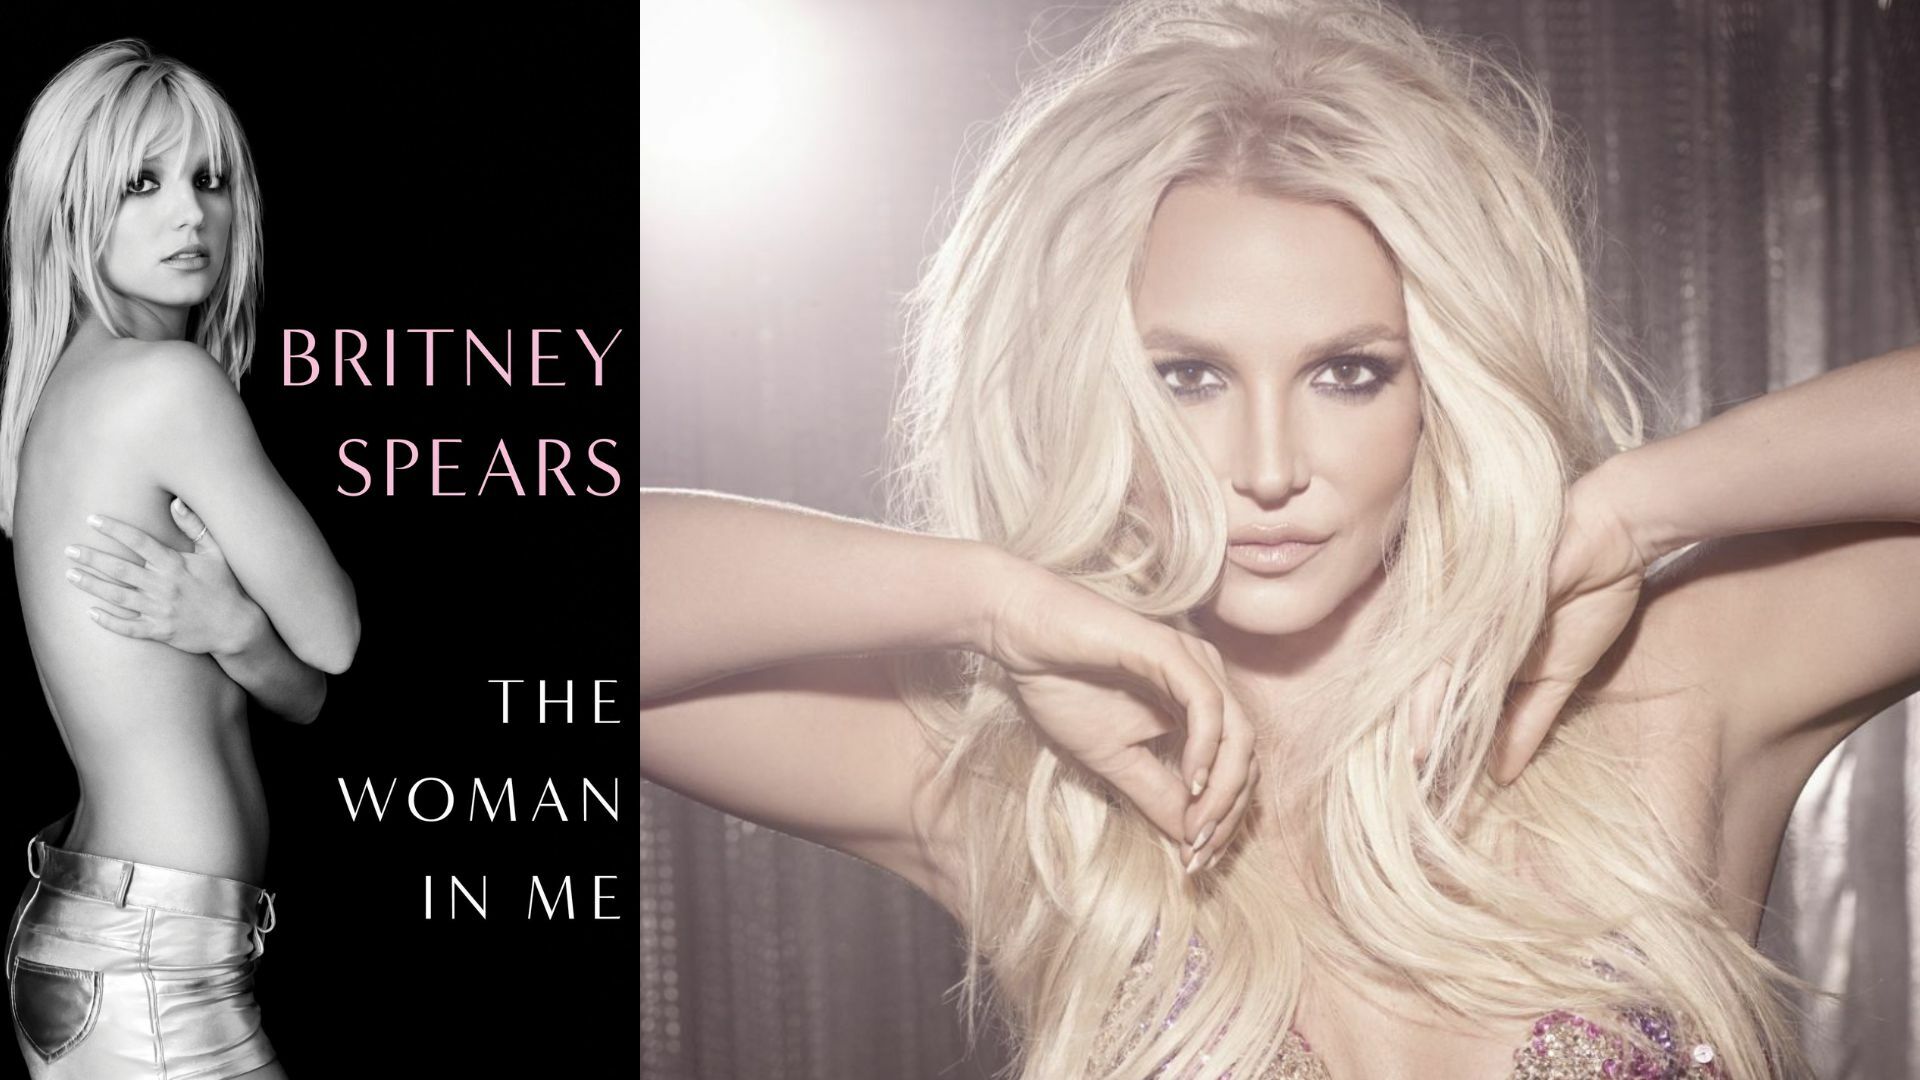 Drama familiar, aborto, drogas y alcohol, las confesiones más impactantes de Britney Spears en su libro